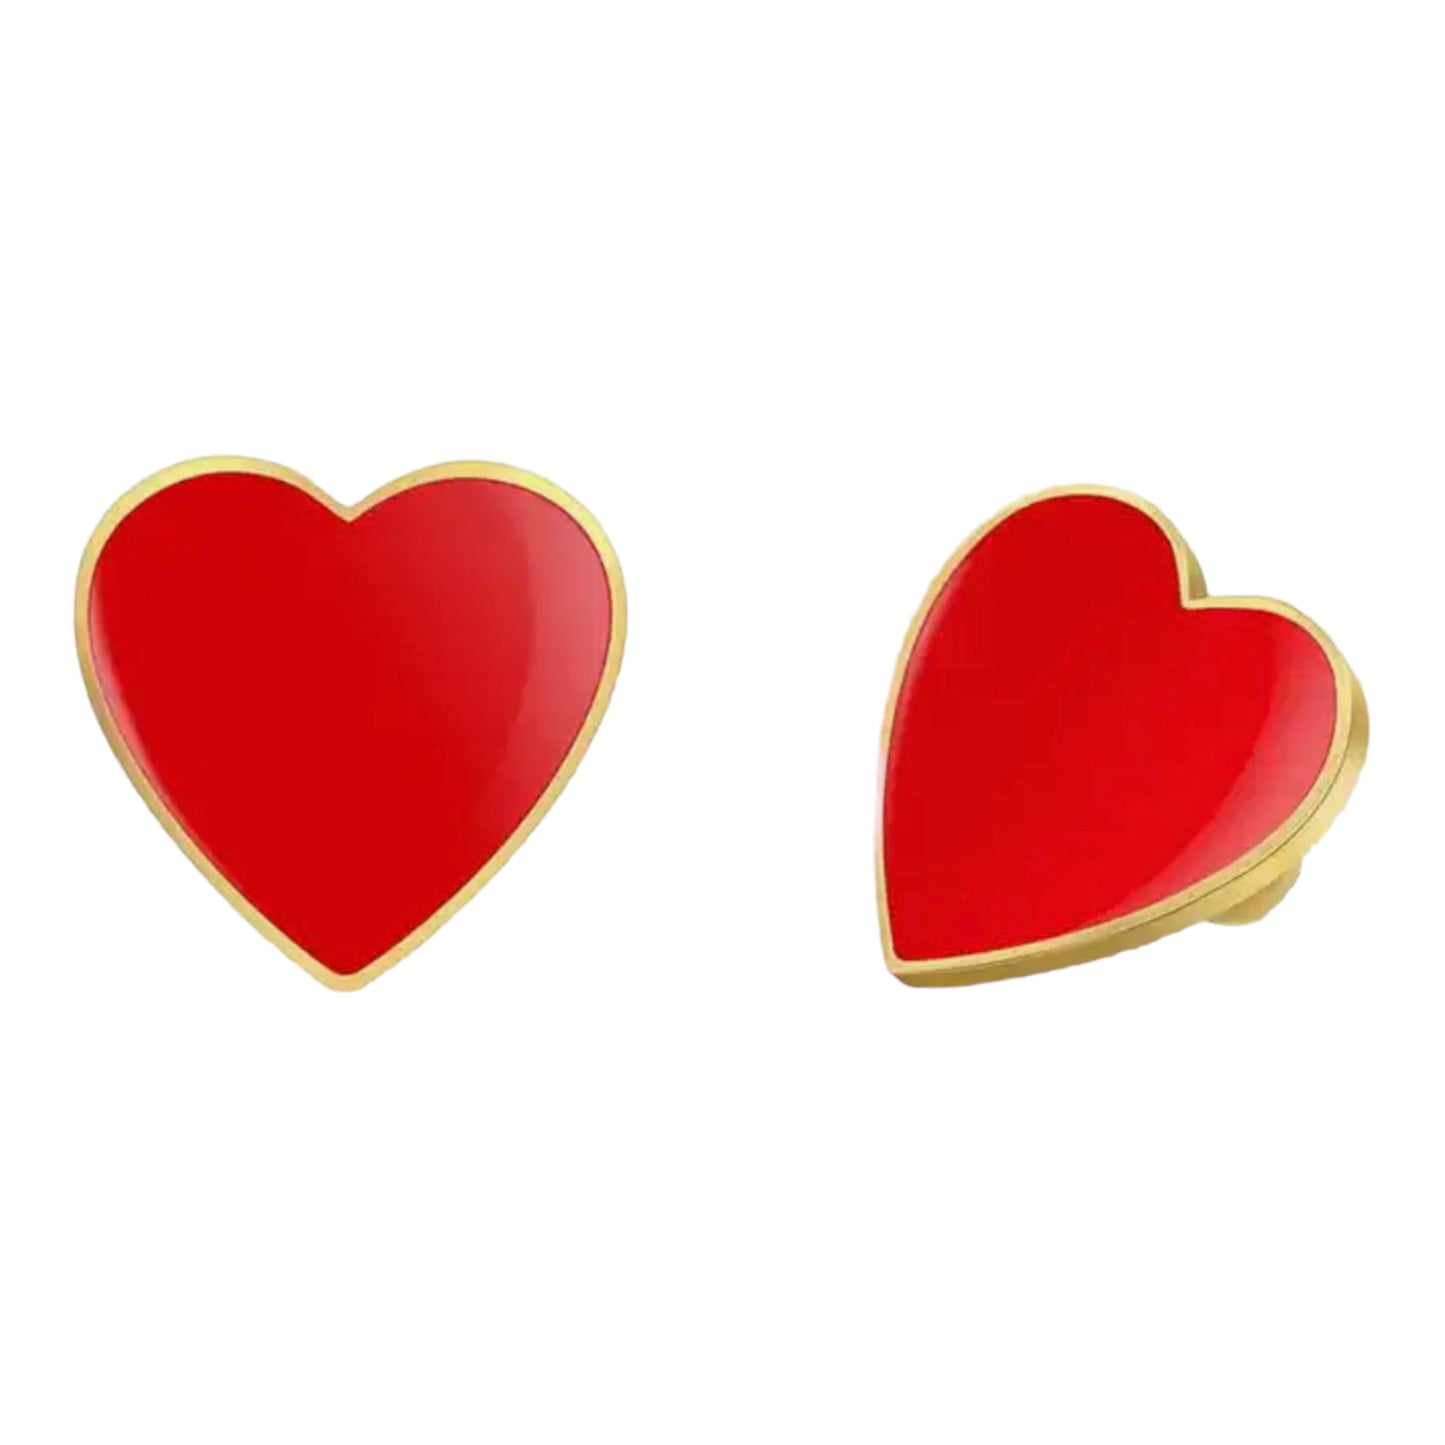 Red Heart Enamel Pin